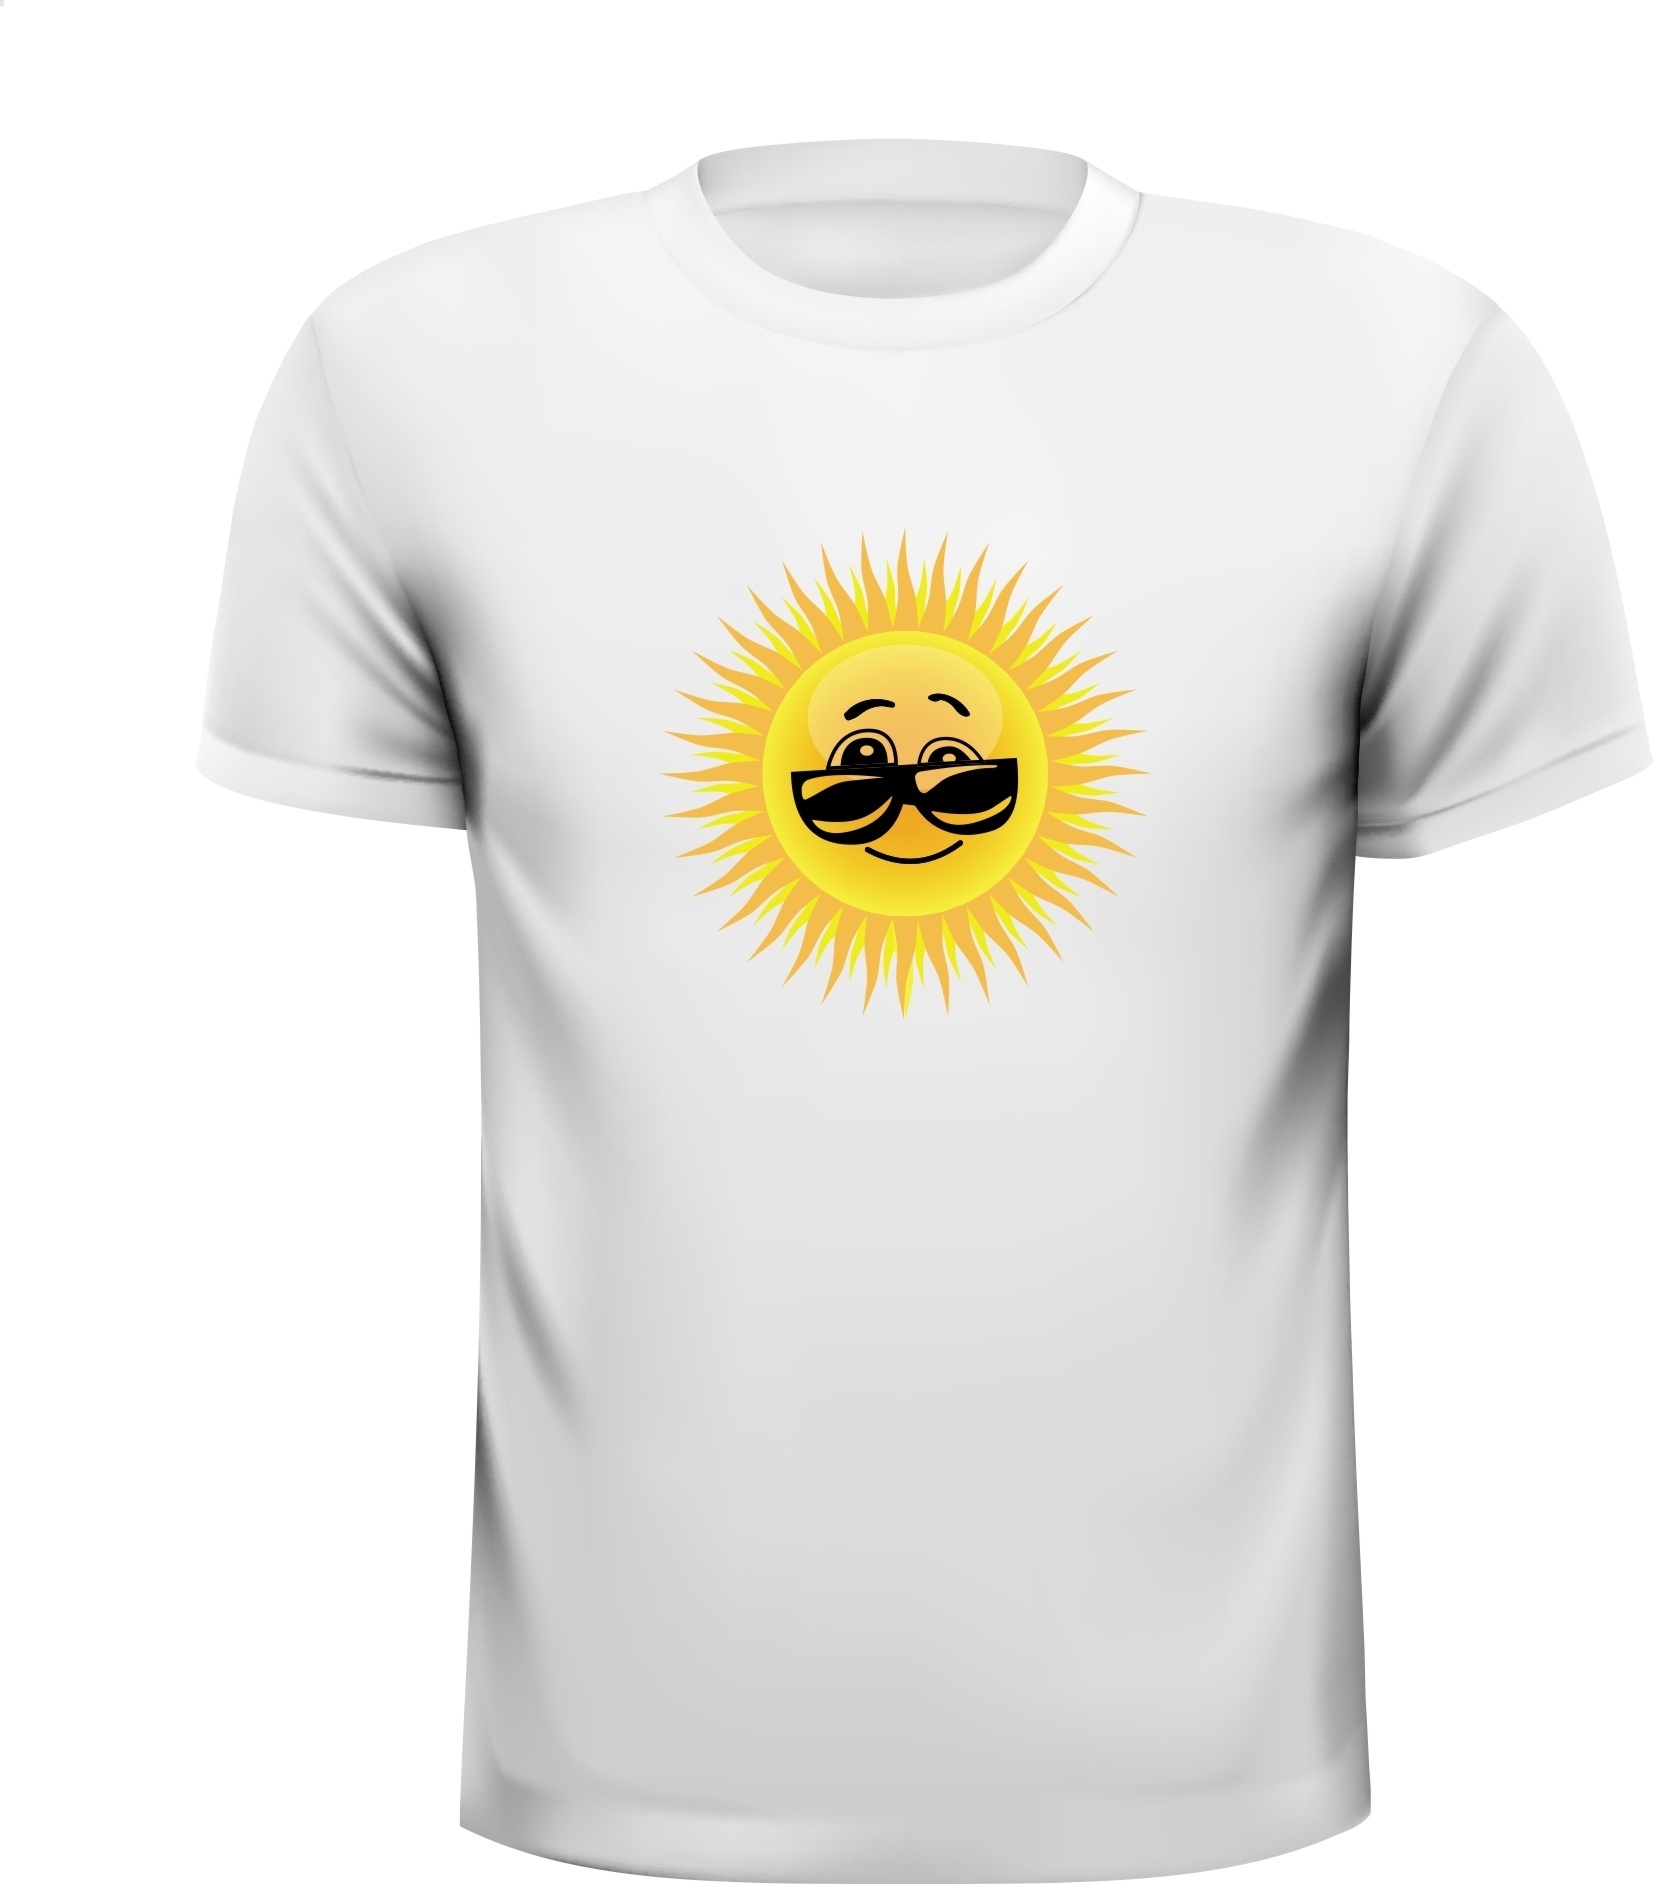 zonnetje vrolijk smile zonnenbril t-shirt